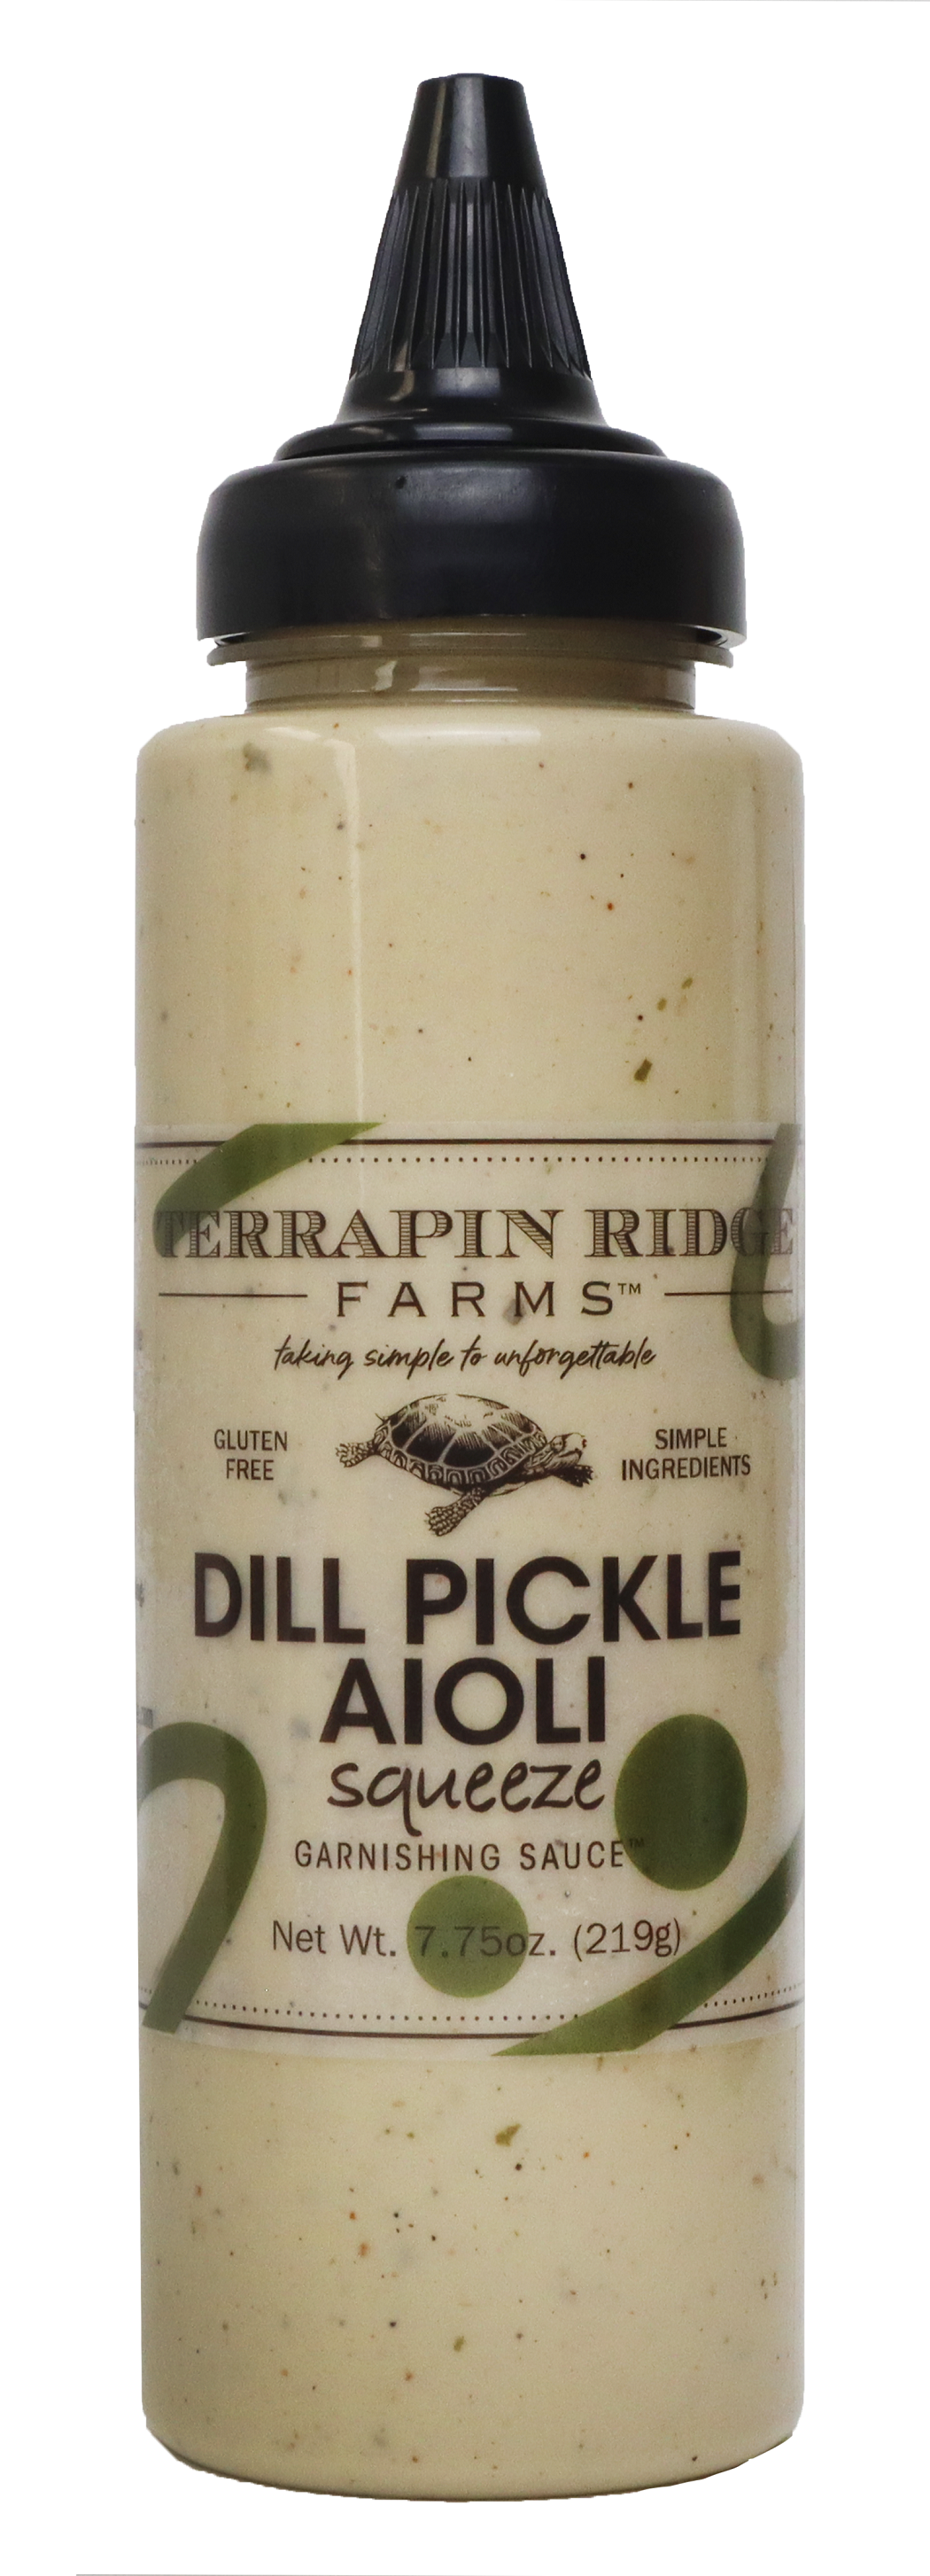 Dill Pickle Aioli